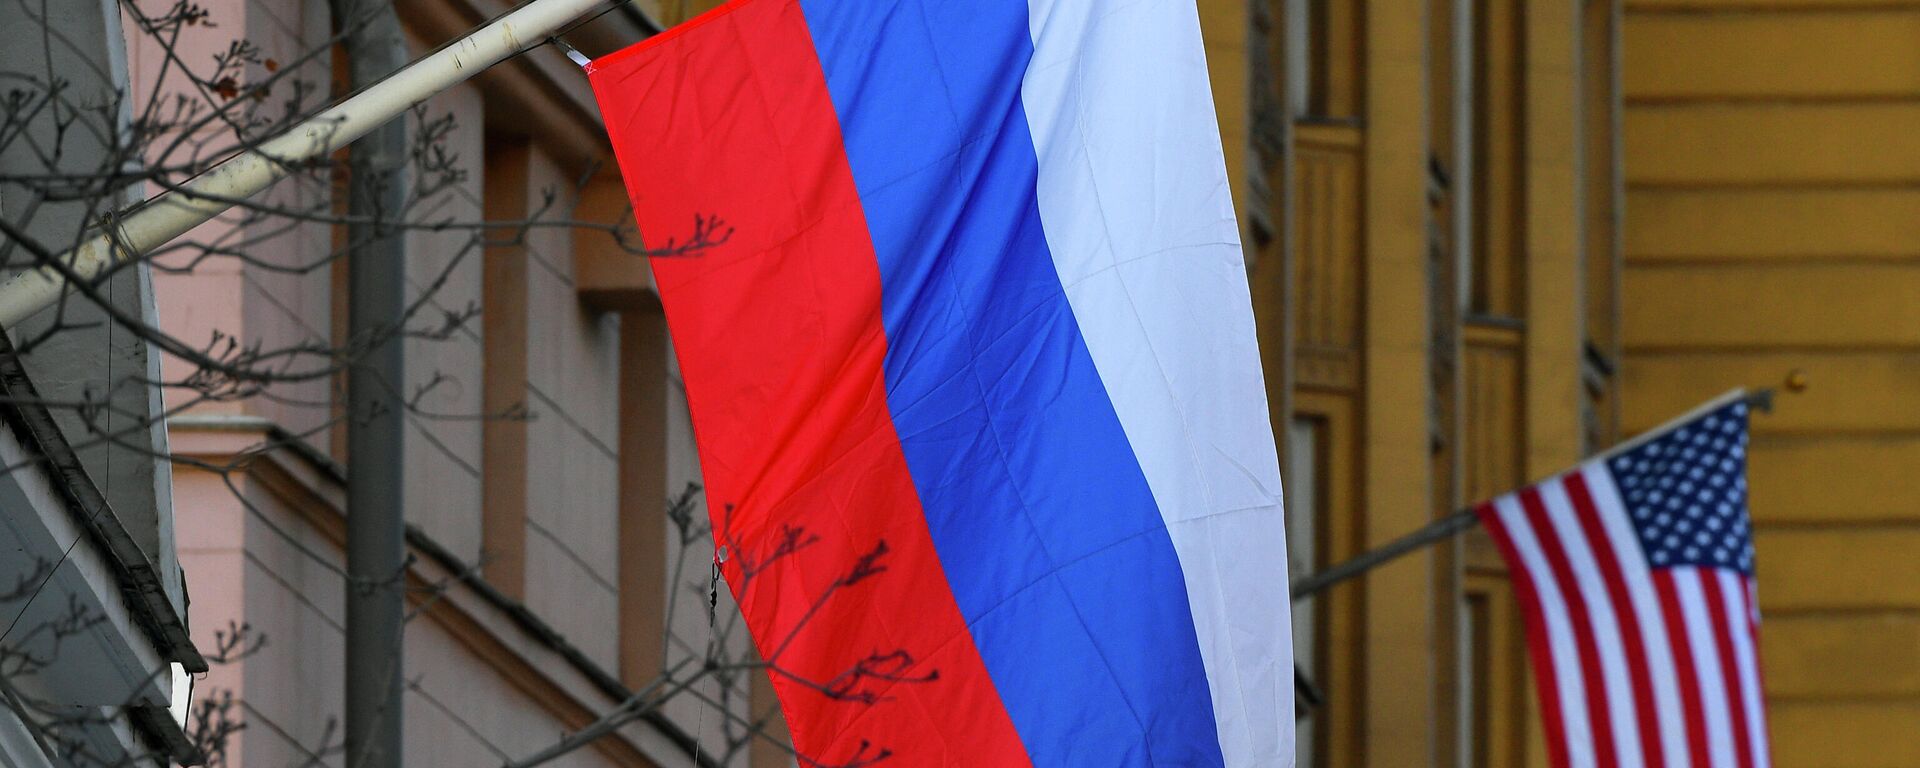 Banderas de Rusia y EEUU en la Embajada estadounidense en Moscú - Sputnik Mundo, 1920, 08.12.2021